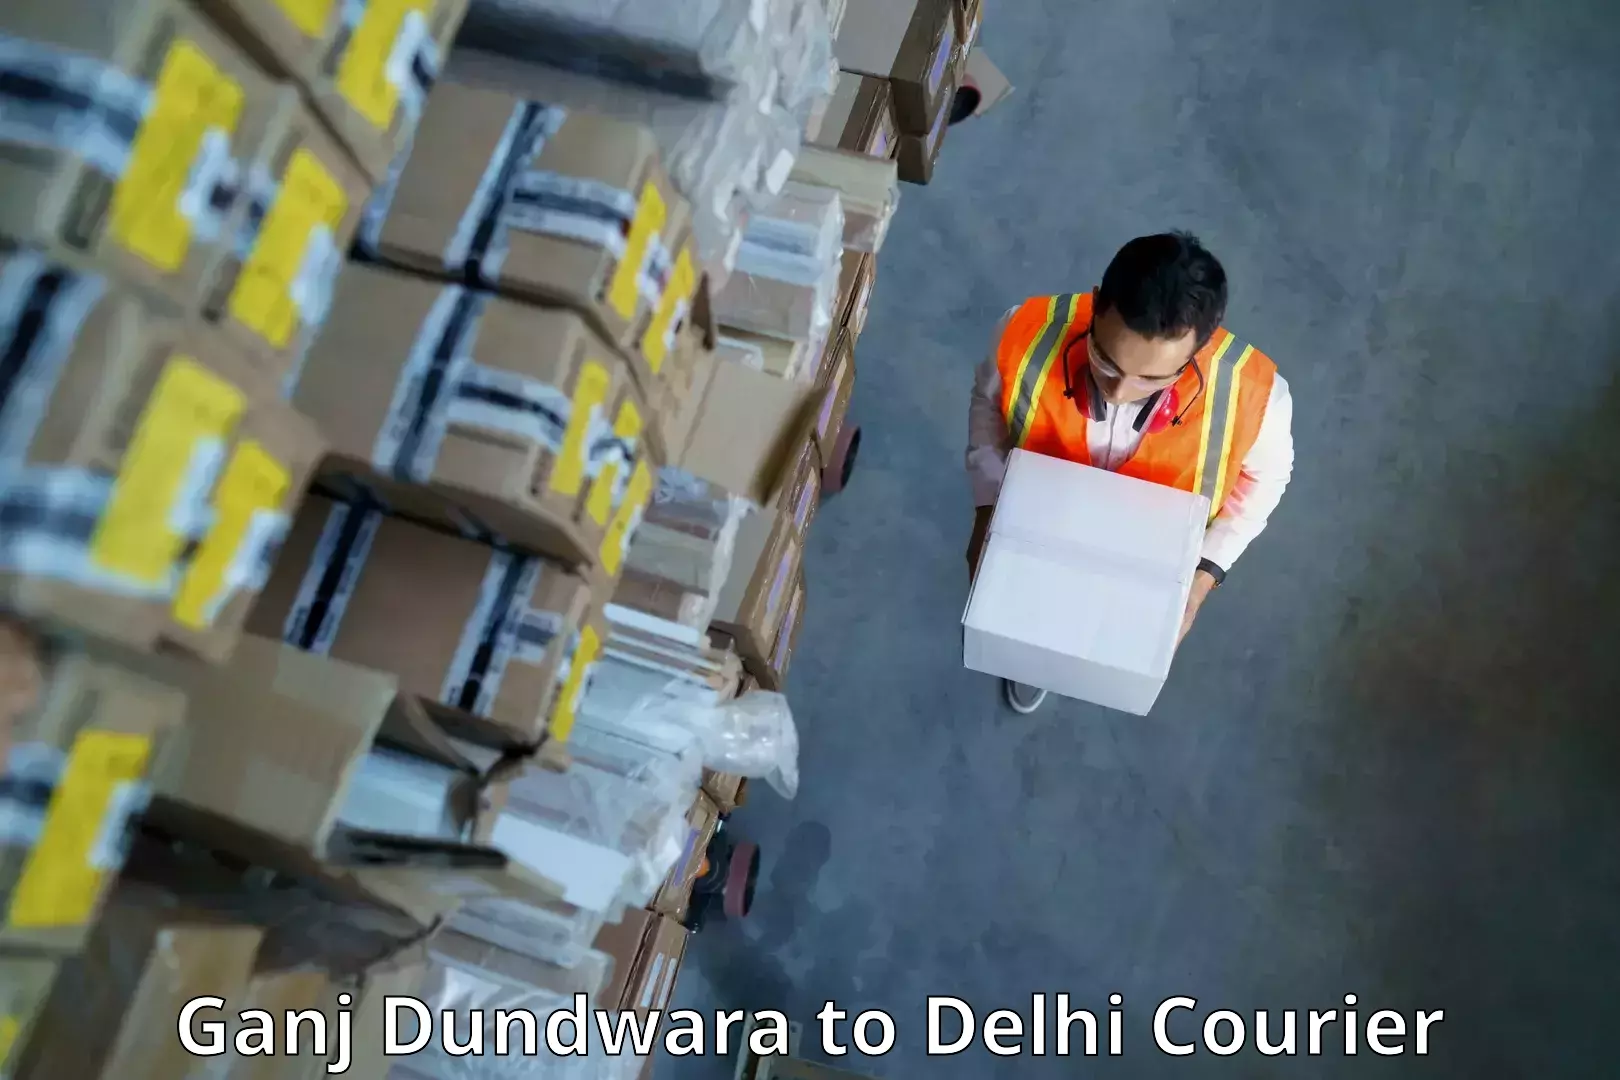 Premium courier services Ganj Dundwara to Delhi